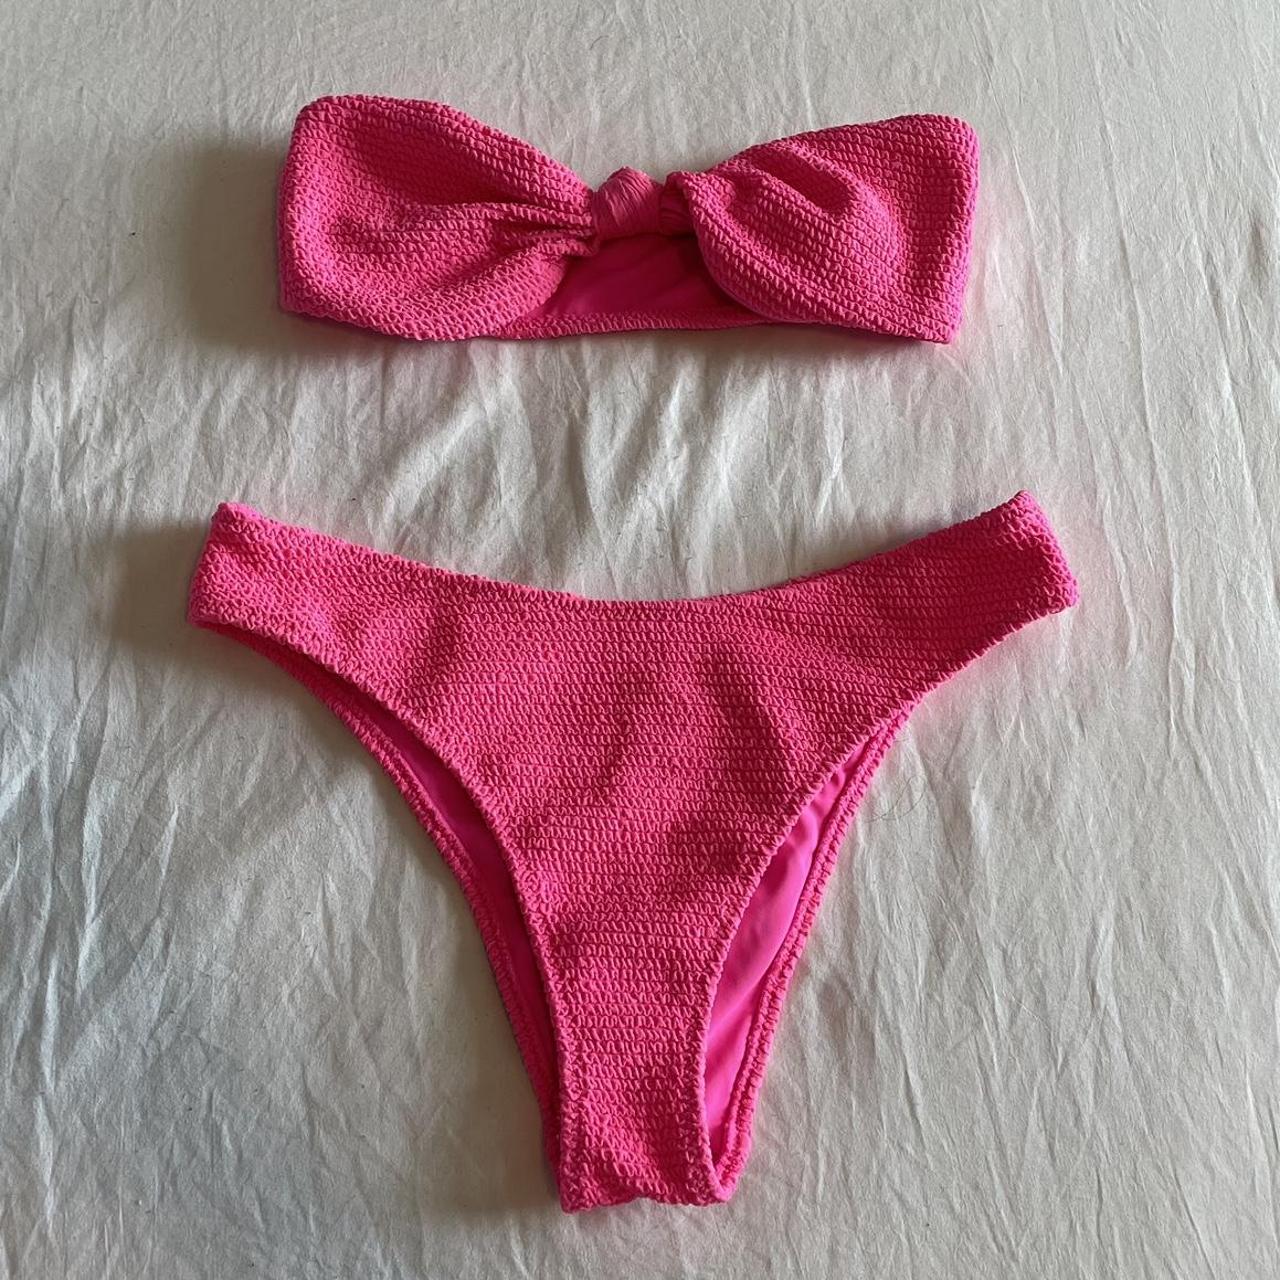 Pacsun Women S Pink Bikinis And Tankini Sets Depop